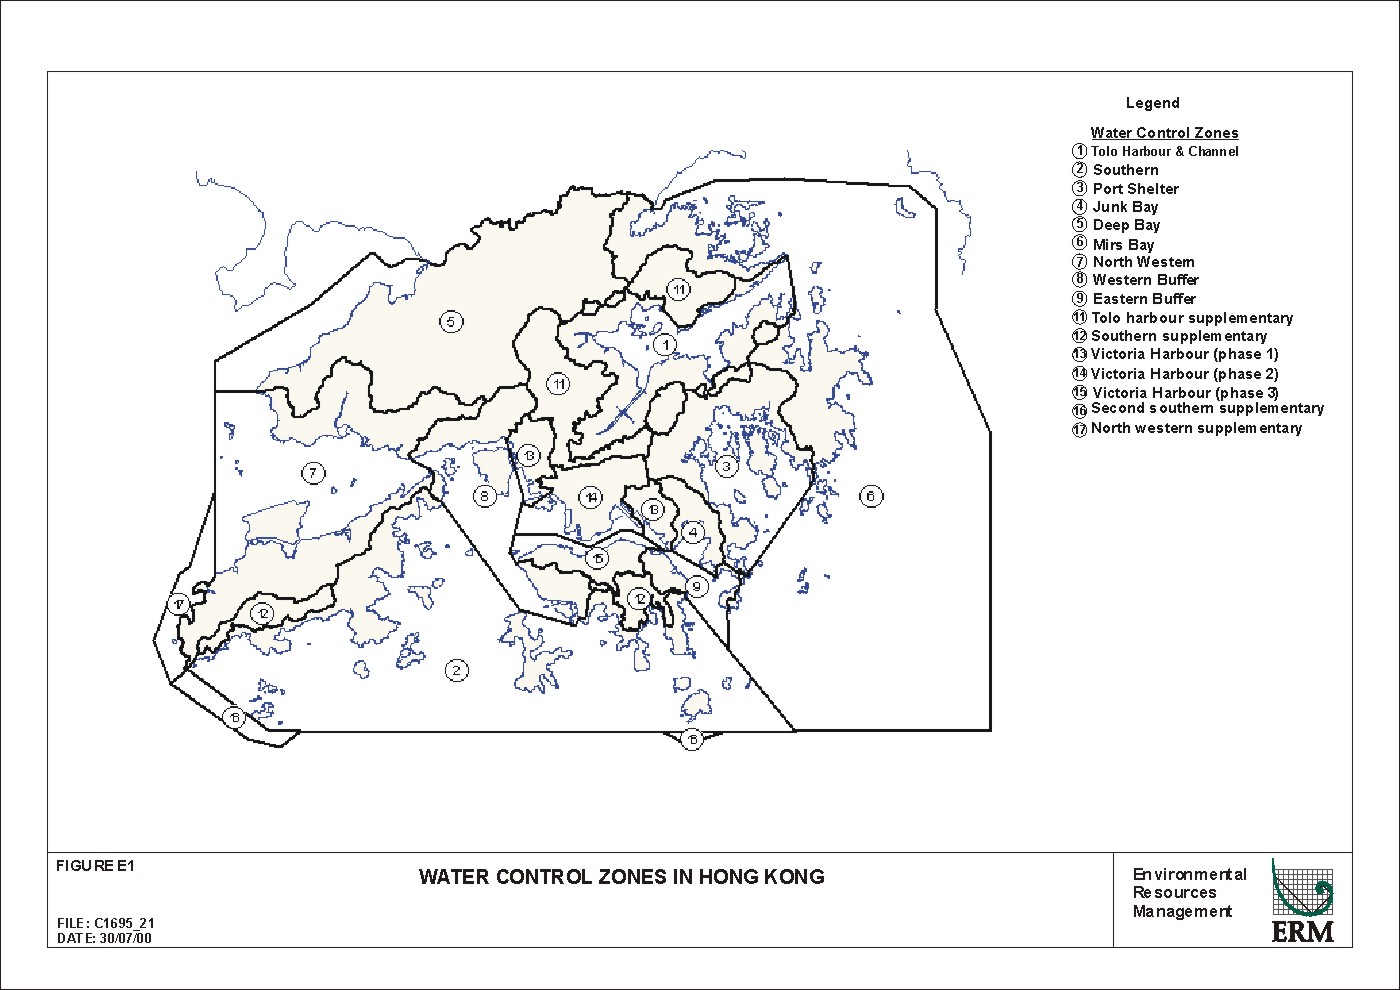 Figure E1 Water Control zones in Hong Kong